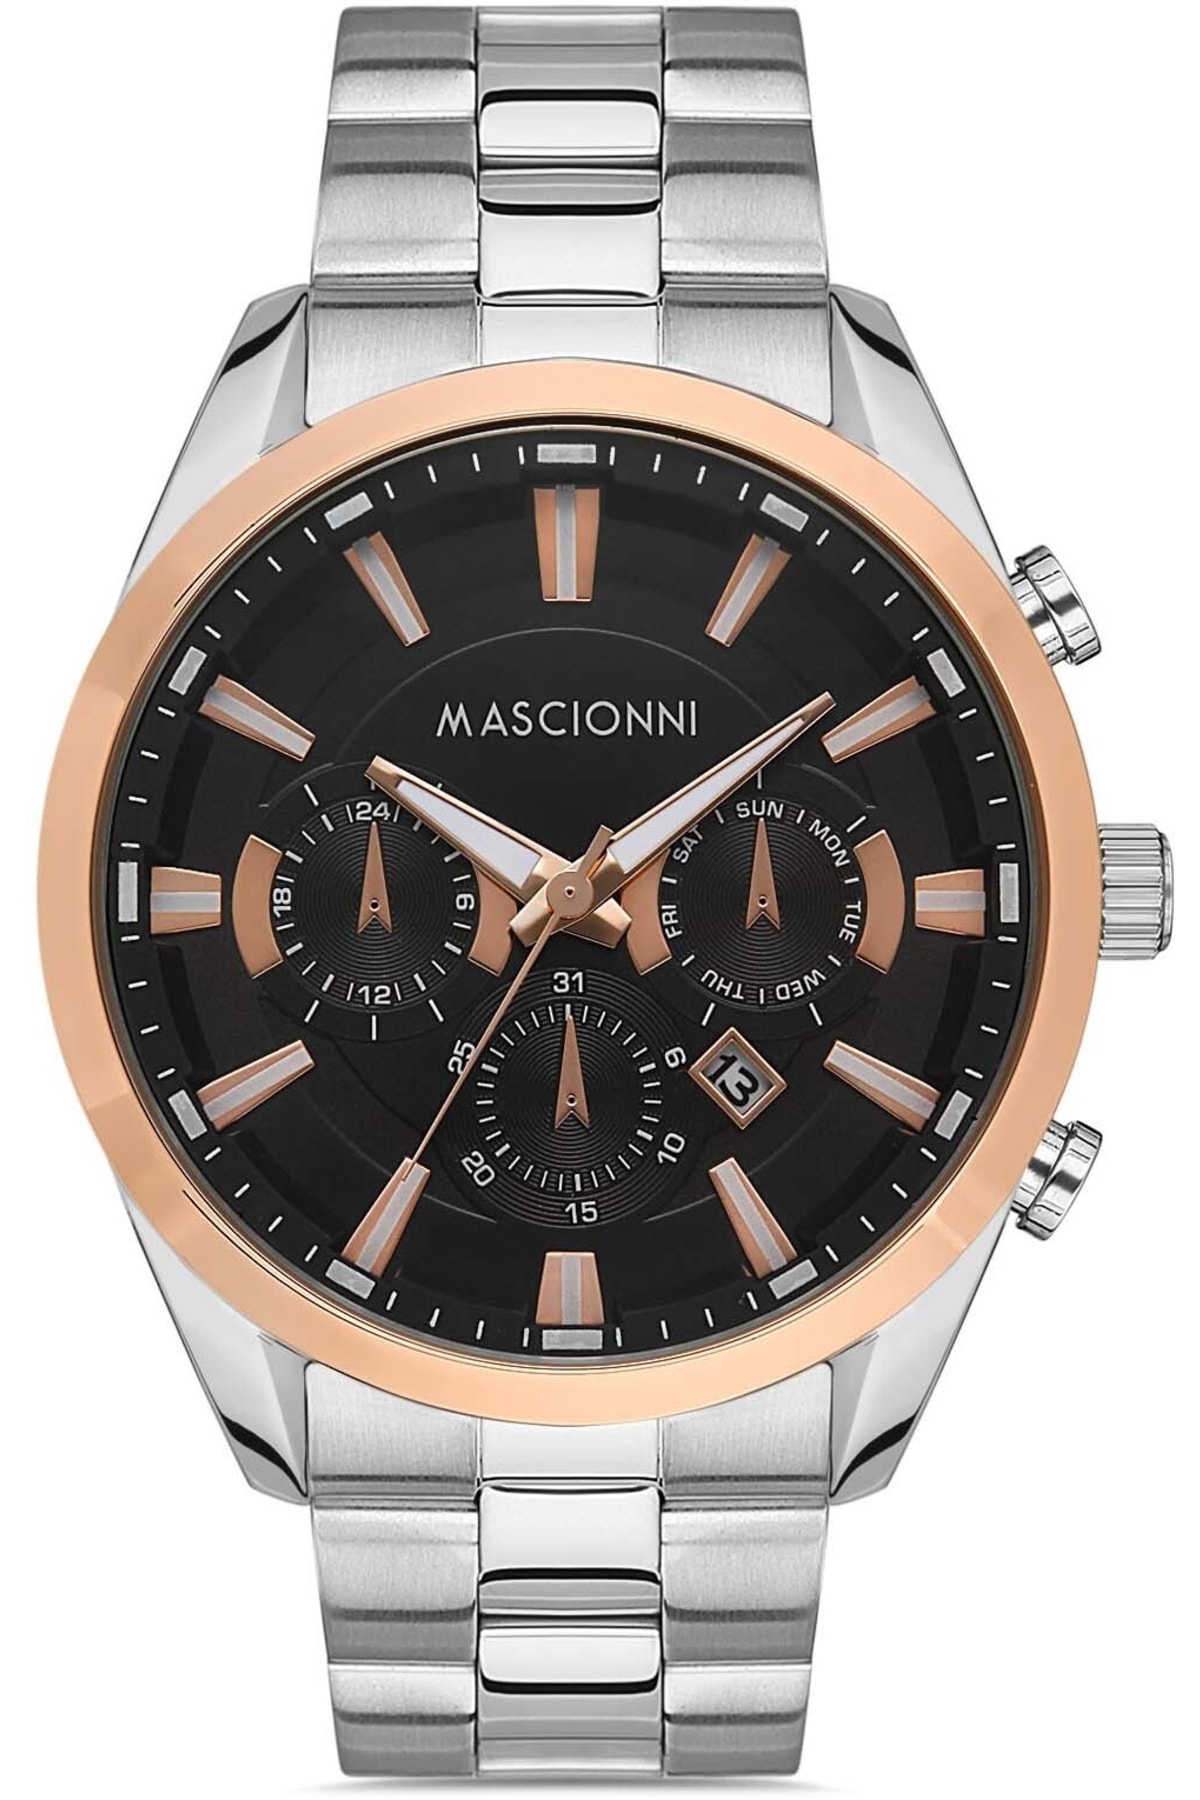 ساعت مردانه ماسیونی Mascionni با کد M.1.1113A.07